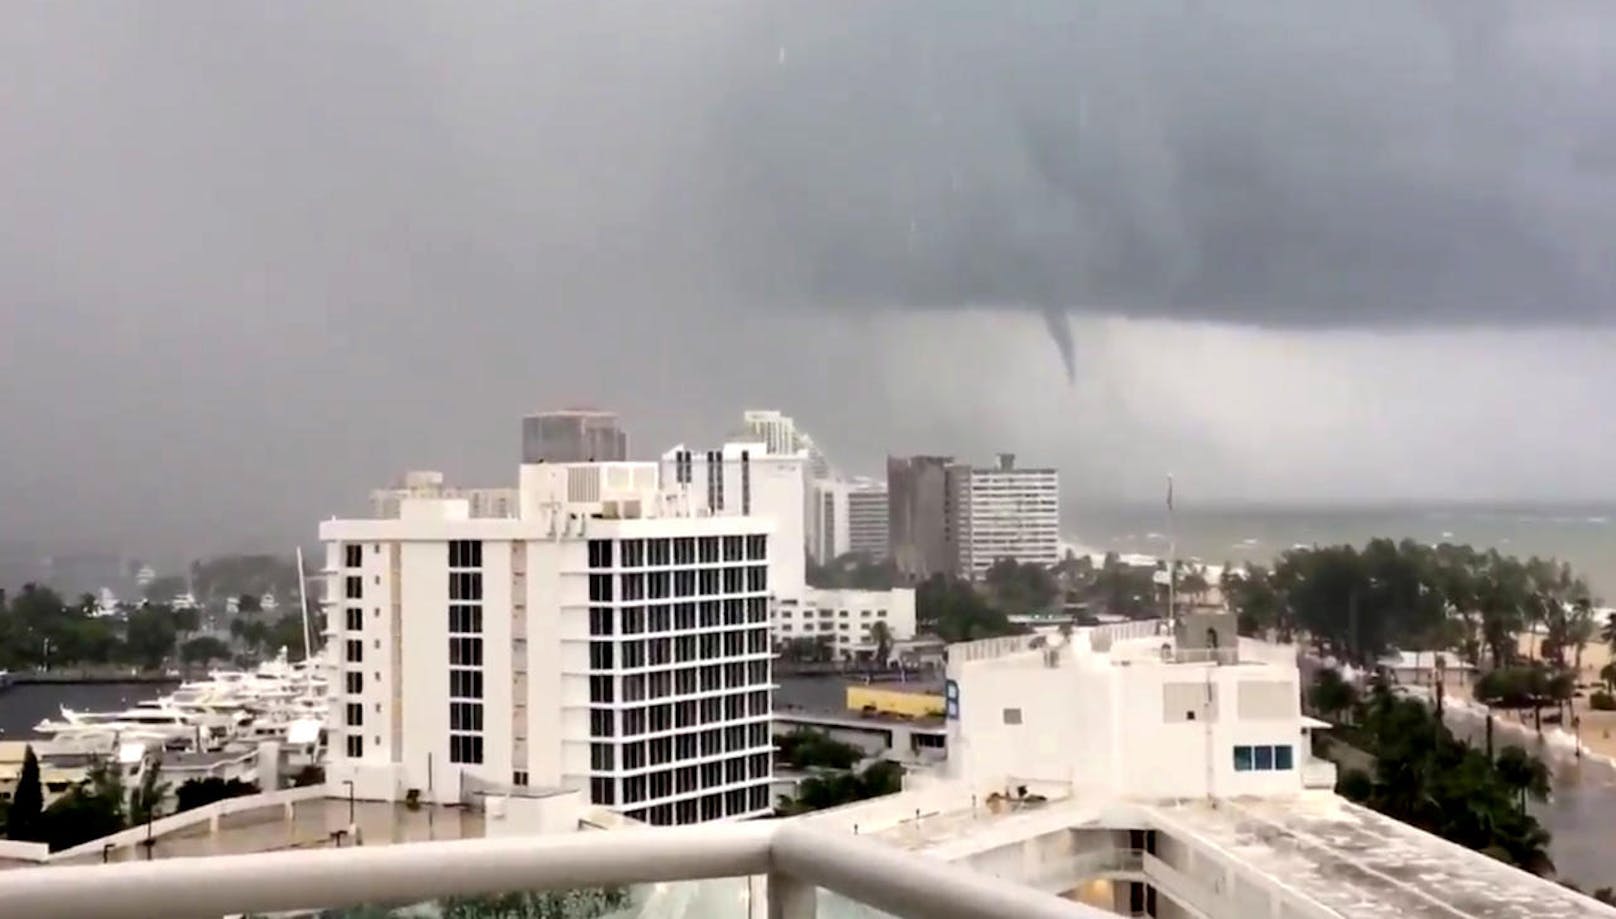 Während das Auge von Hurrikan Irma an der Westküste Floridas entlangzieht, verursacht der Zyklon an der Ostküste zahlreiche Tornados. Im Bild: Ein sich bildender Tornado bei Fort Lauderdale nahe Miami (9. September 2017).